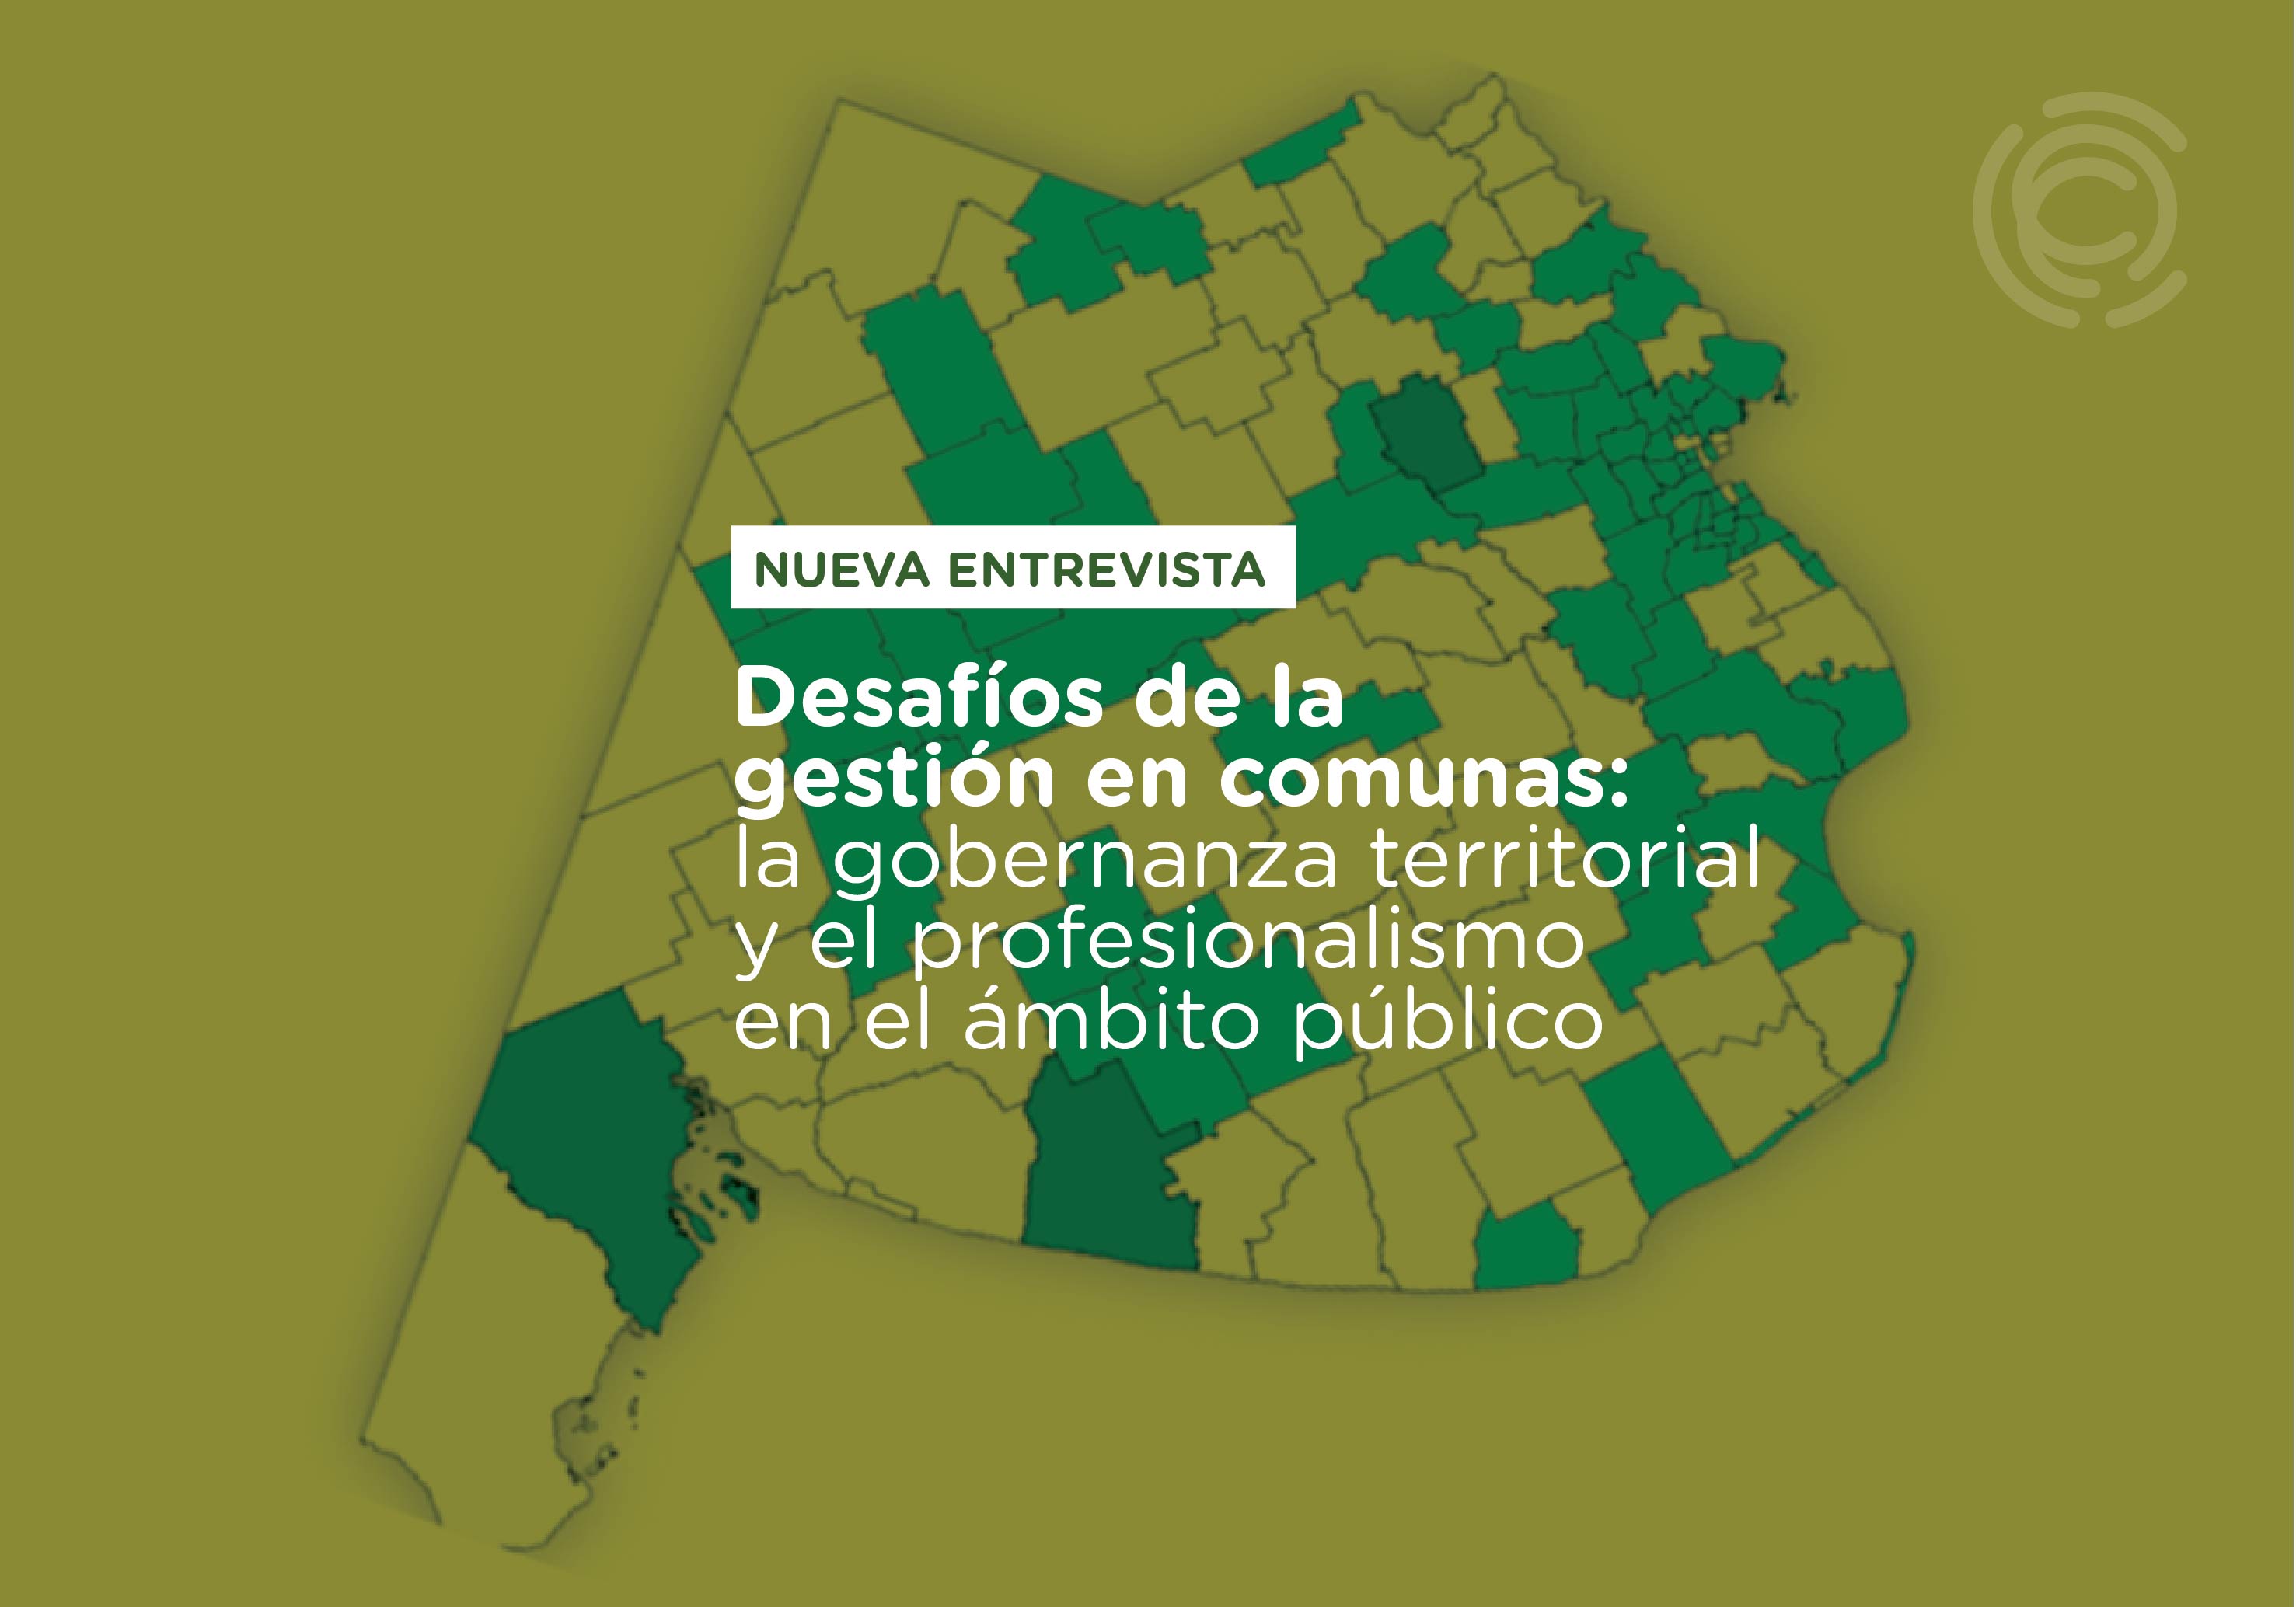 Inscribite, Desafíos de la gestión en comunas: la gobernanza territorial y el profesionalismo en el ámbito público